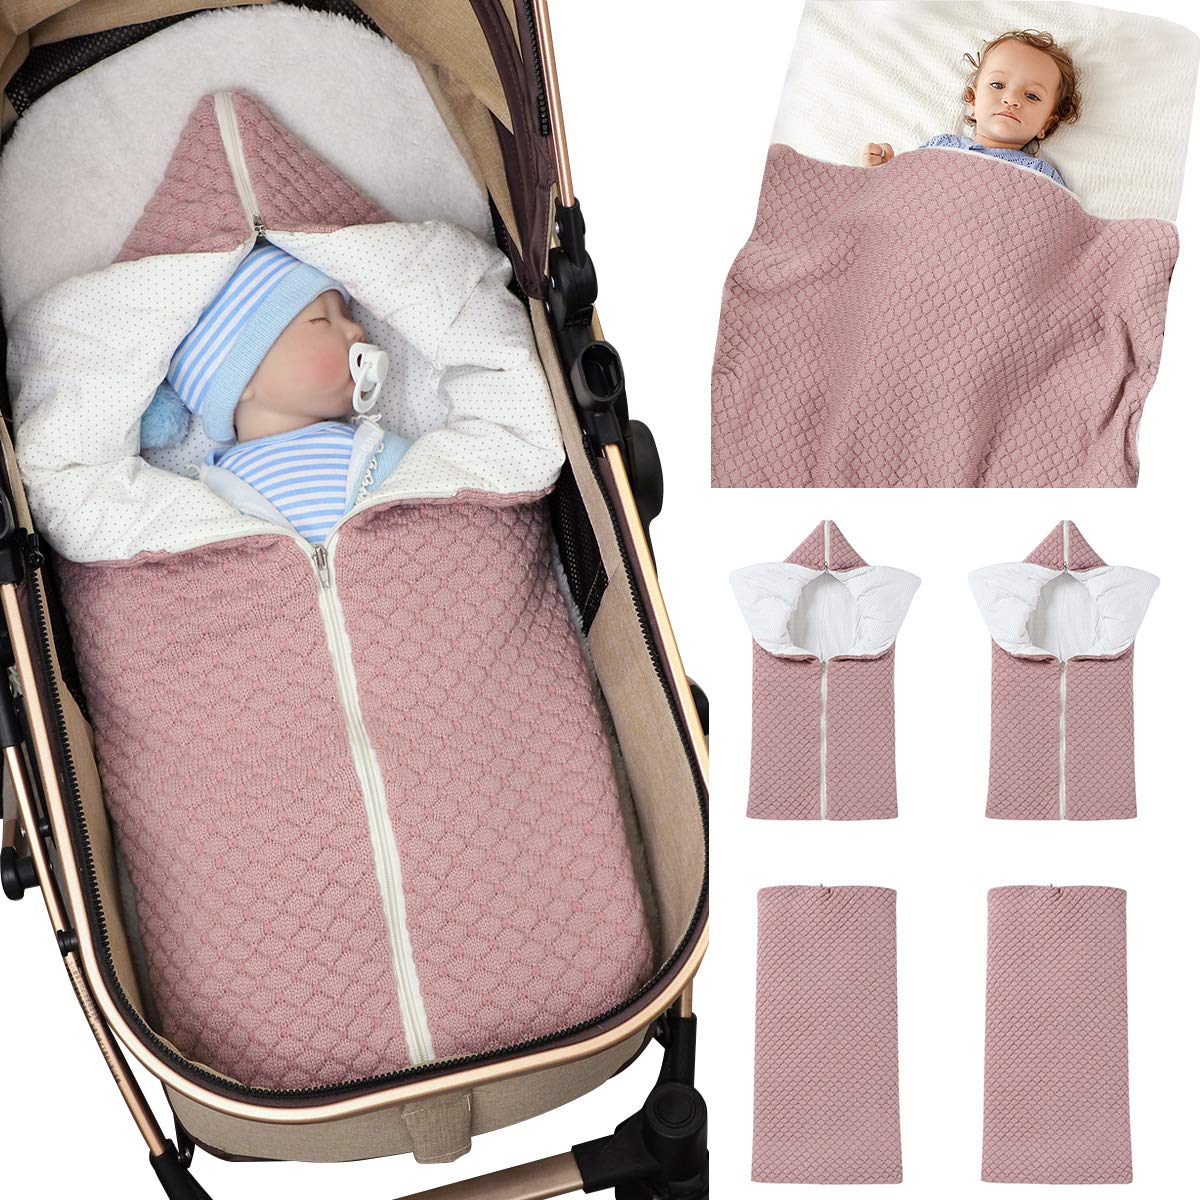 Baby Wrap Wickeldecke Strick Schlafsack Kinderwagen Wrap Weich Warm für 0-12 Monate Babys Unisex (Rosa)